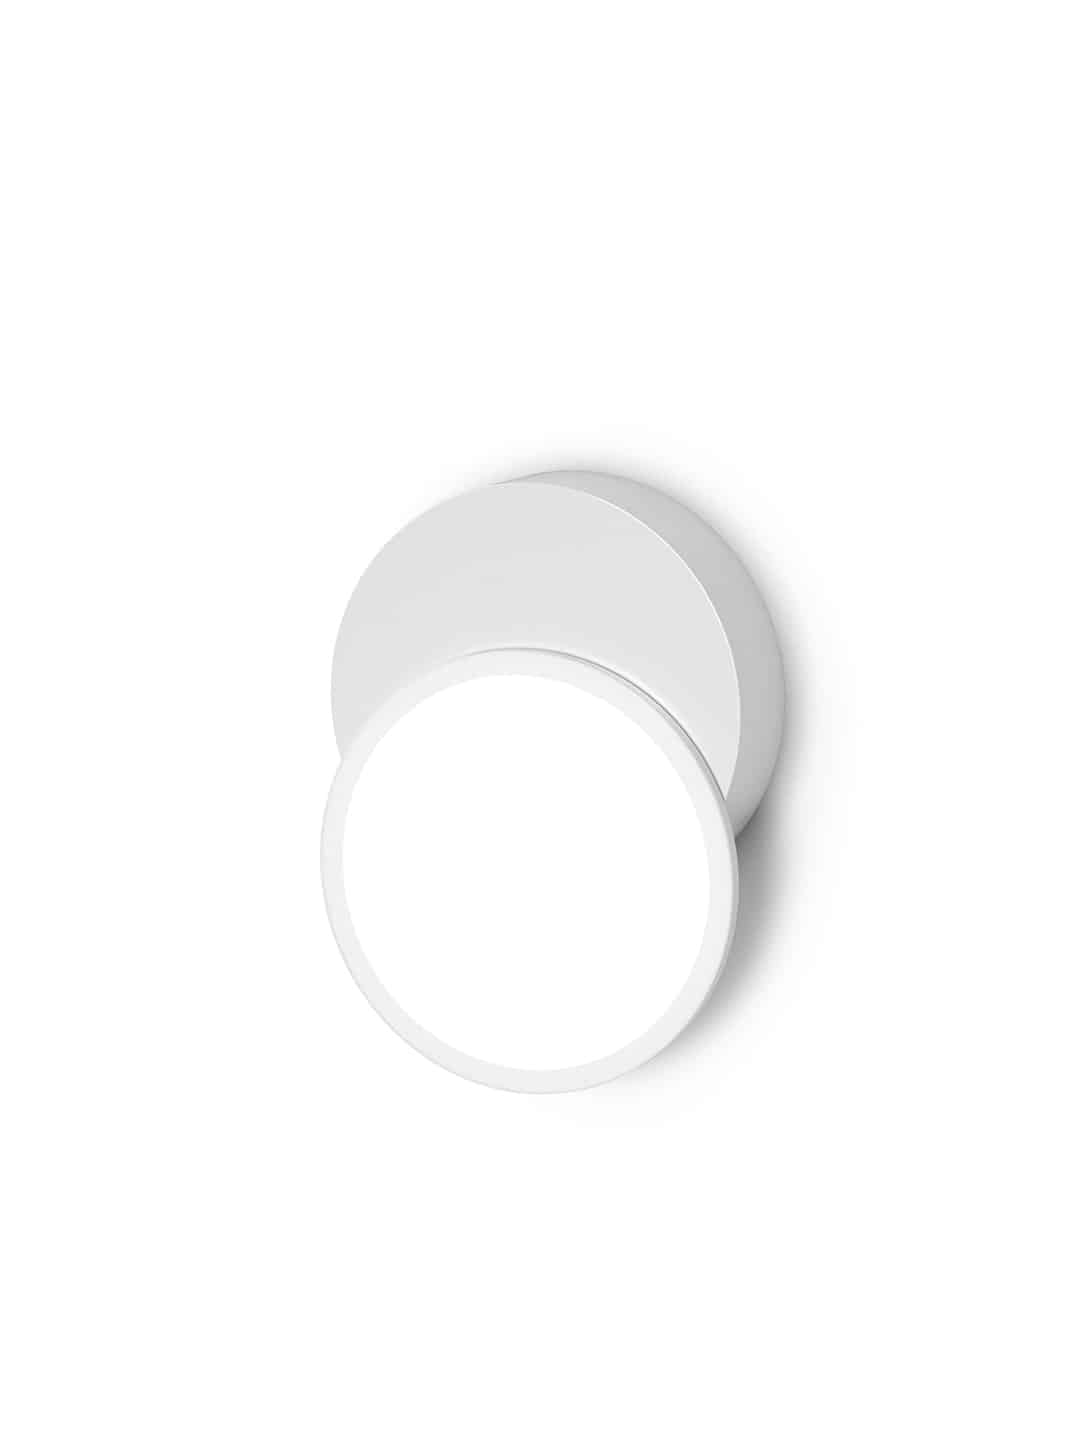 Стильный настенный светильник Tunto Dot 01 белого цвета